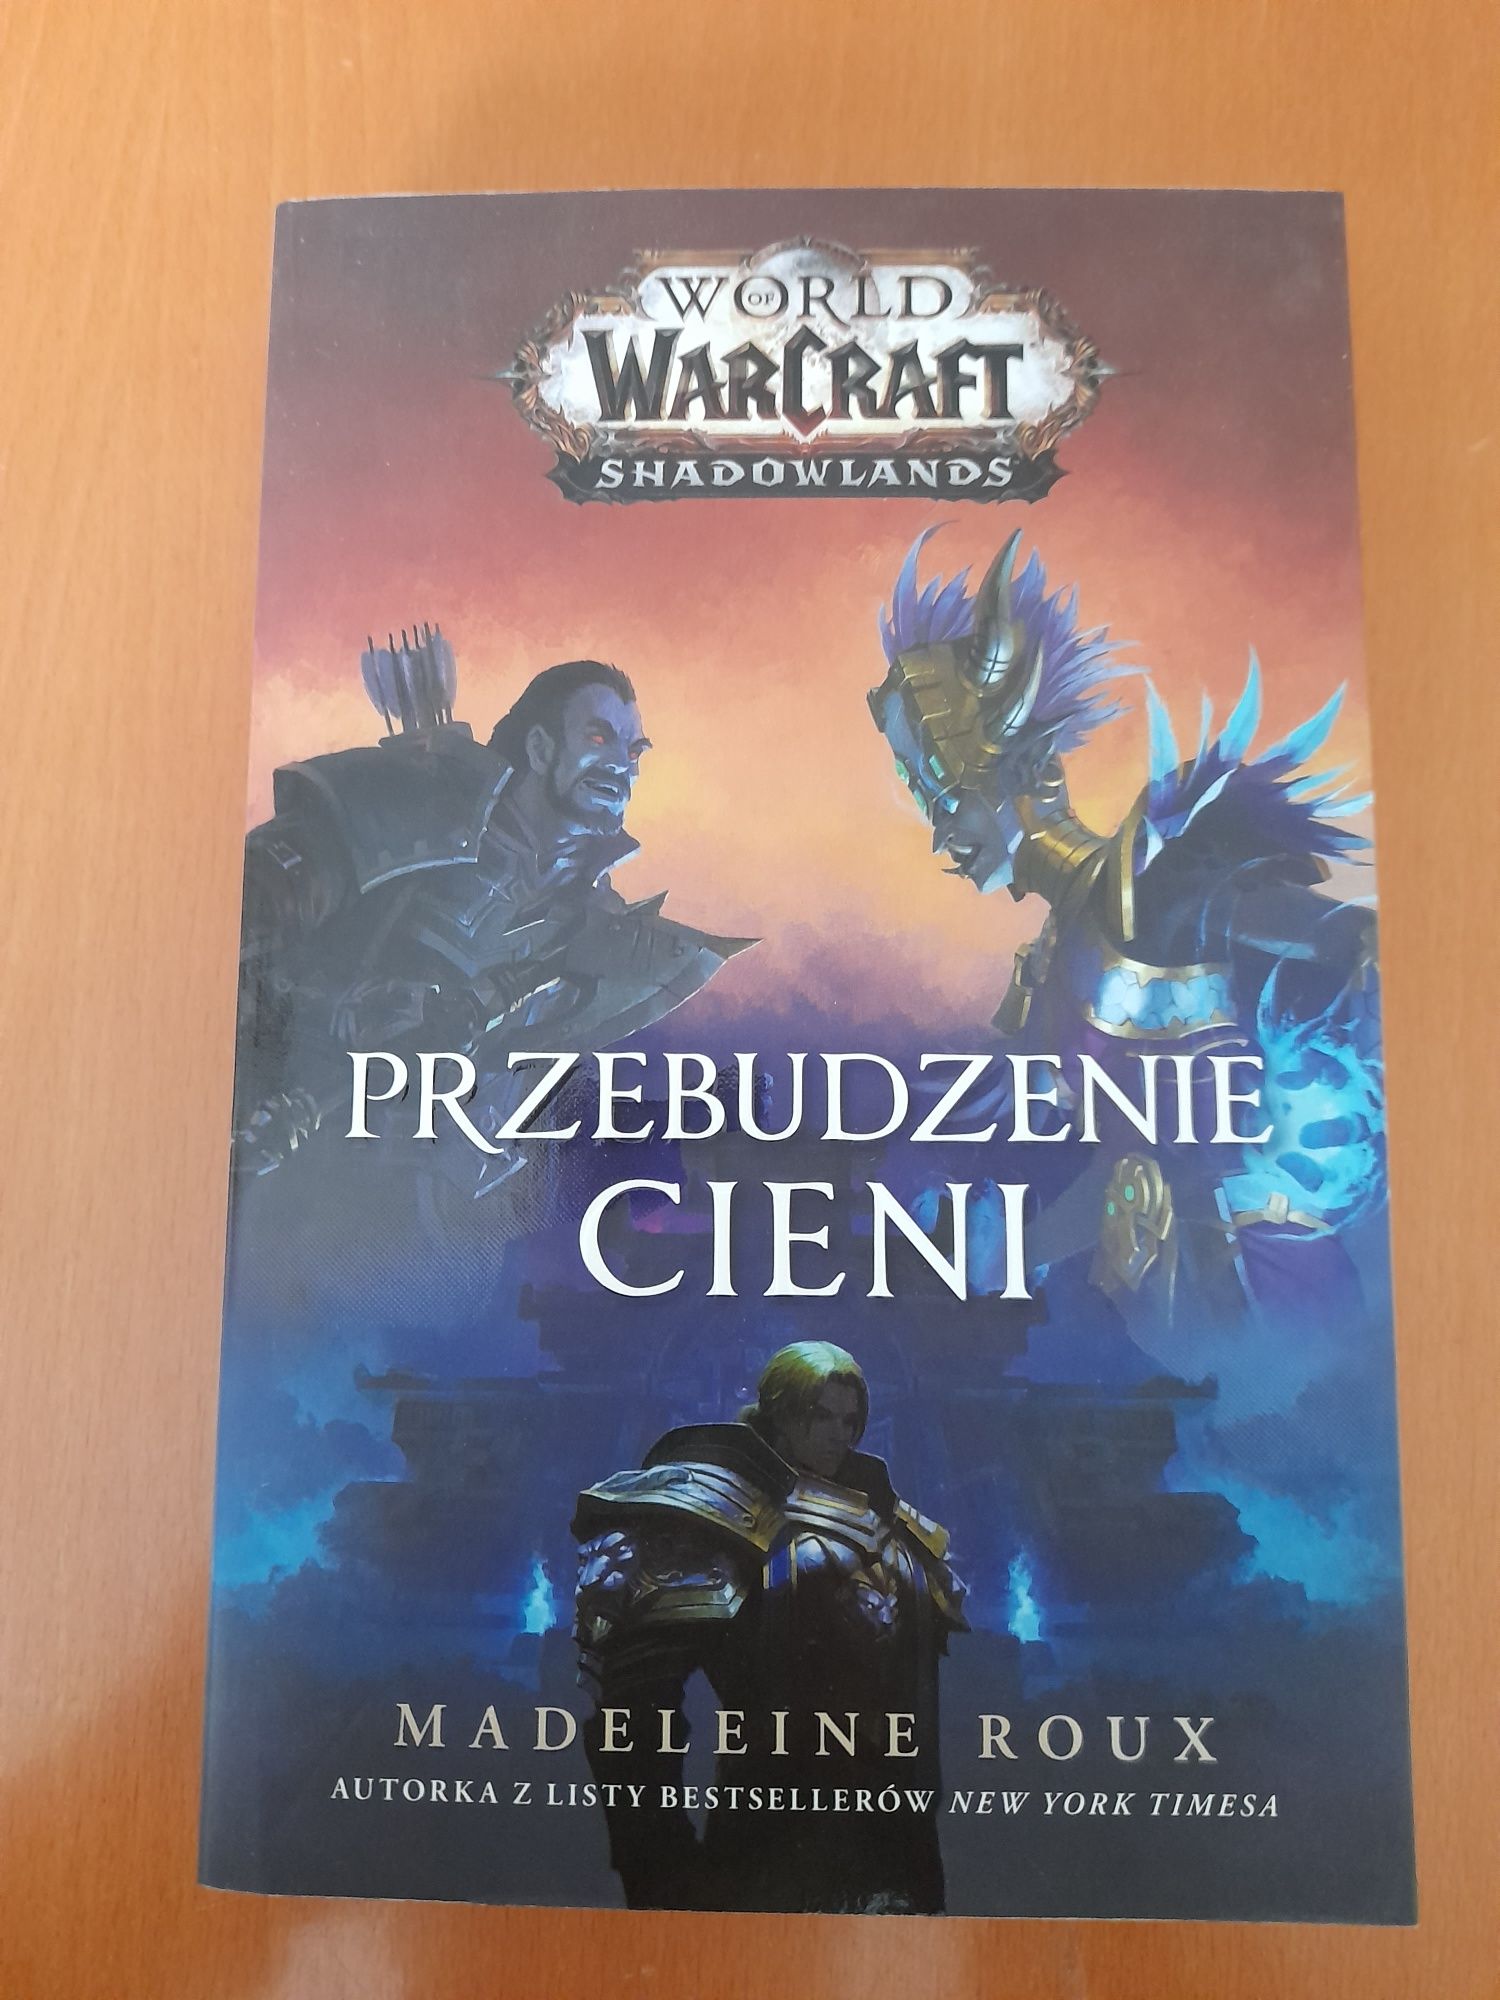 "World of Warcraft: Przebudzenie cieni" Madeleine Roux